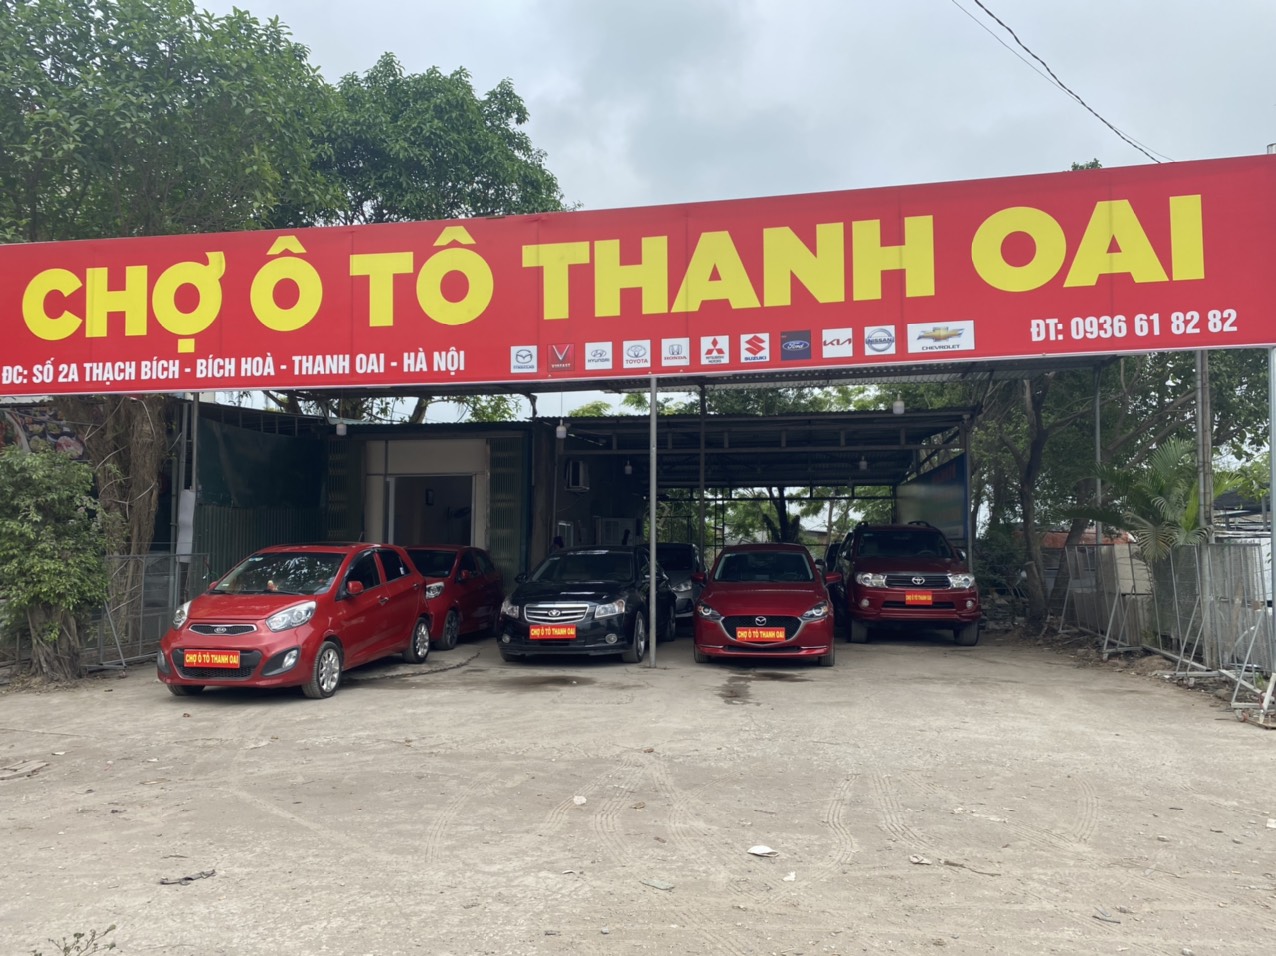 Chợ ô tô Thanh Oai